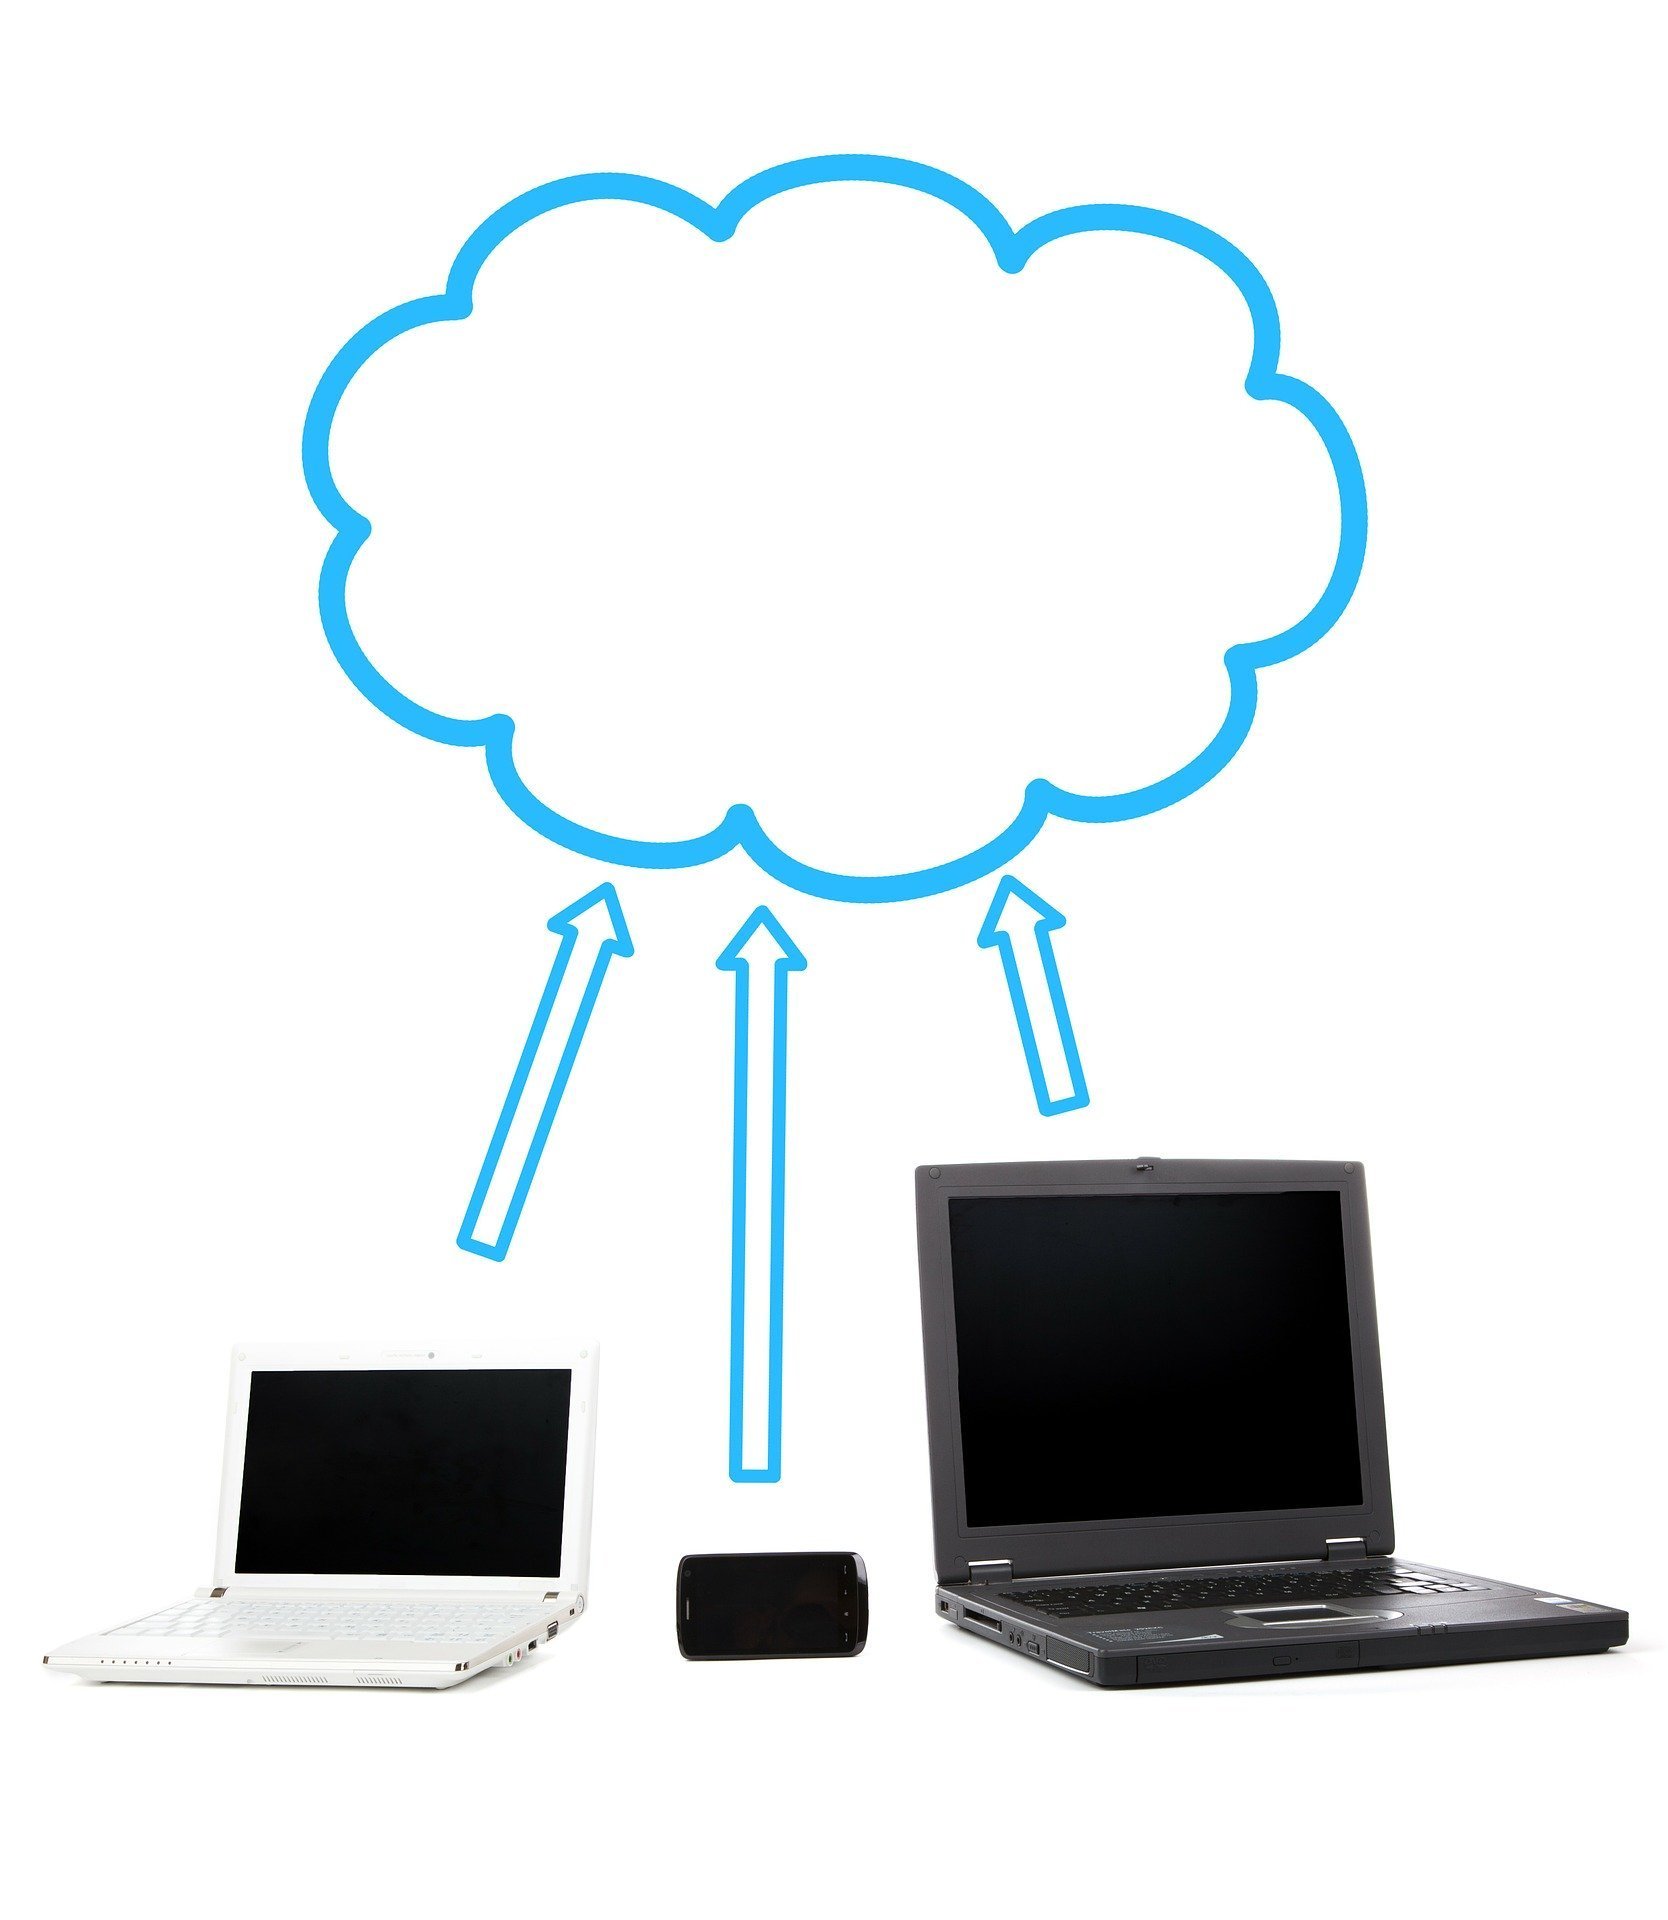 Cloud Computing - A future prerogative